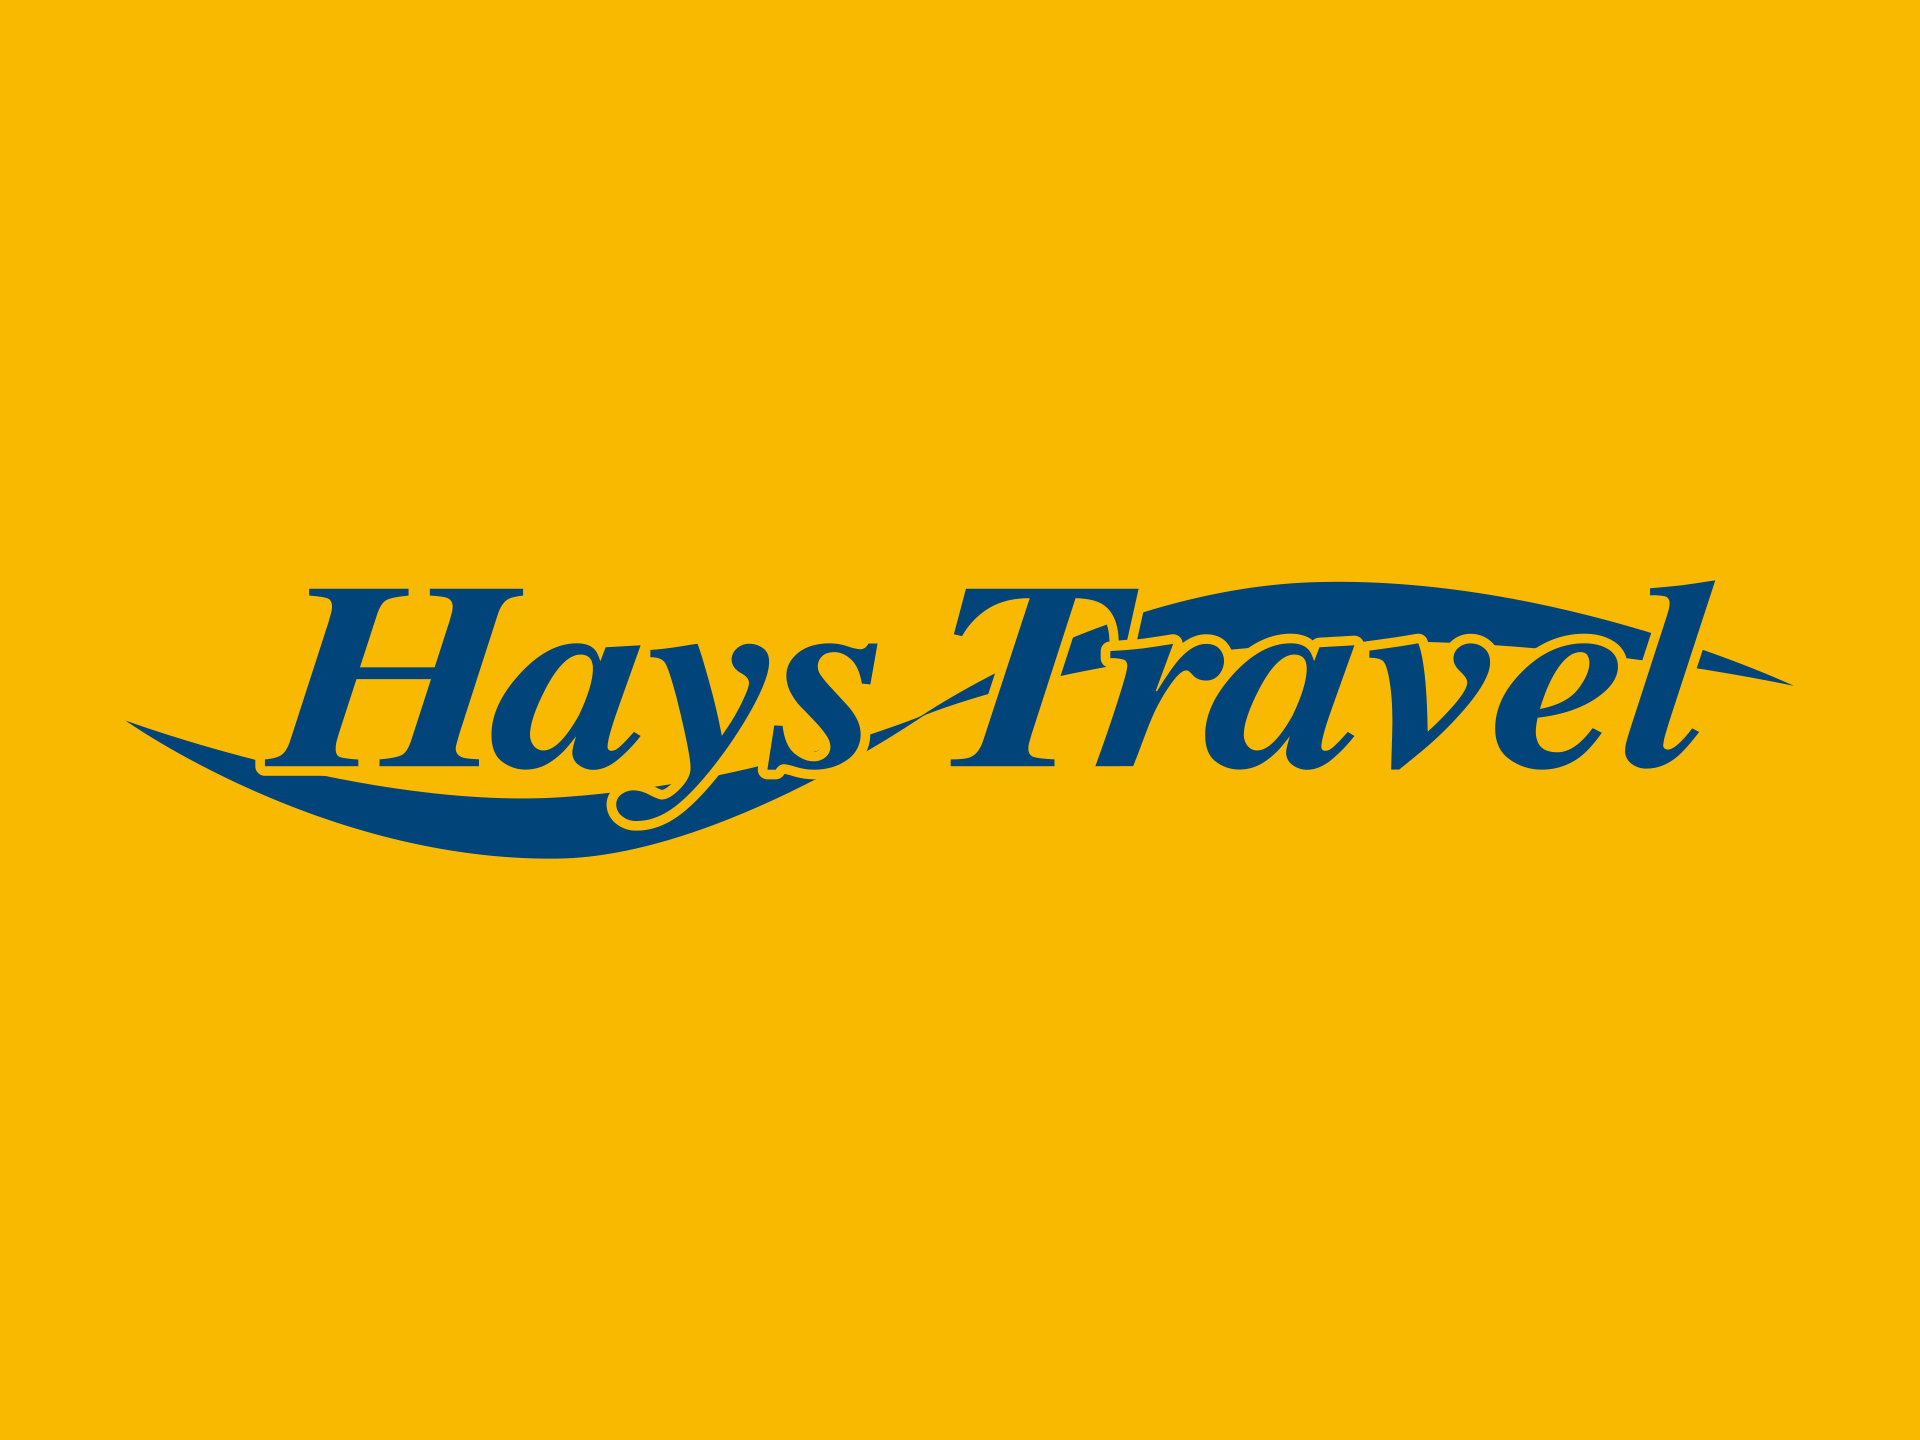 hays travel mission statement